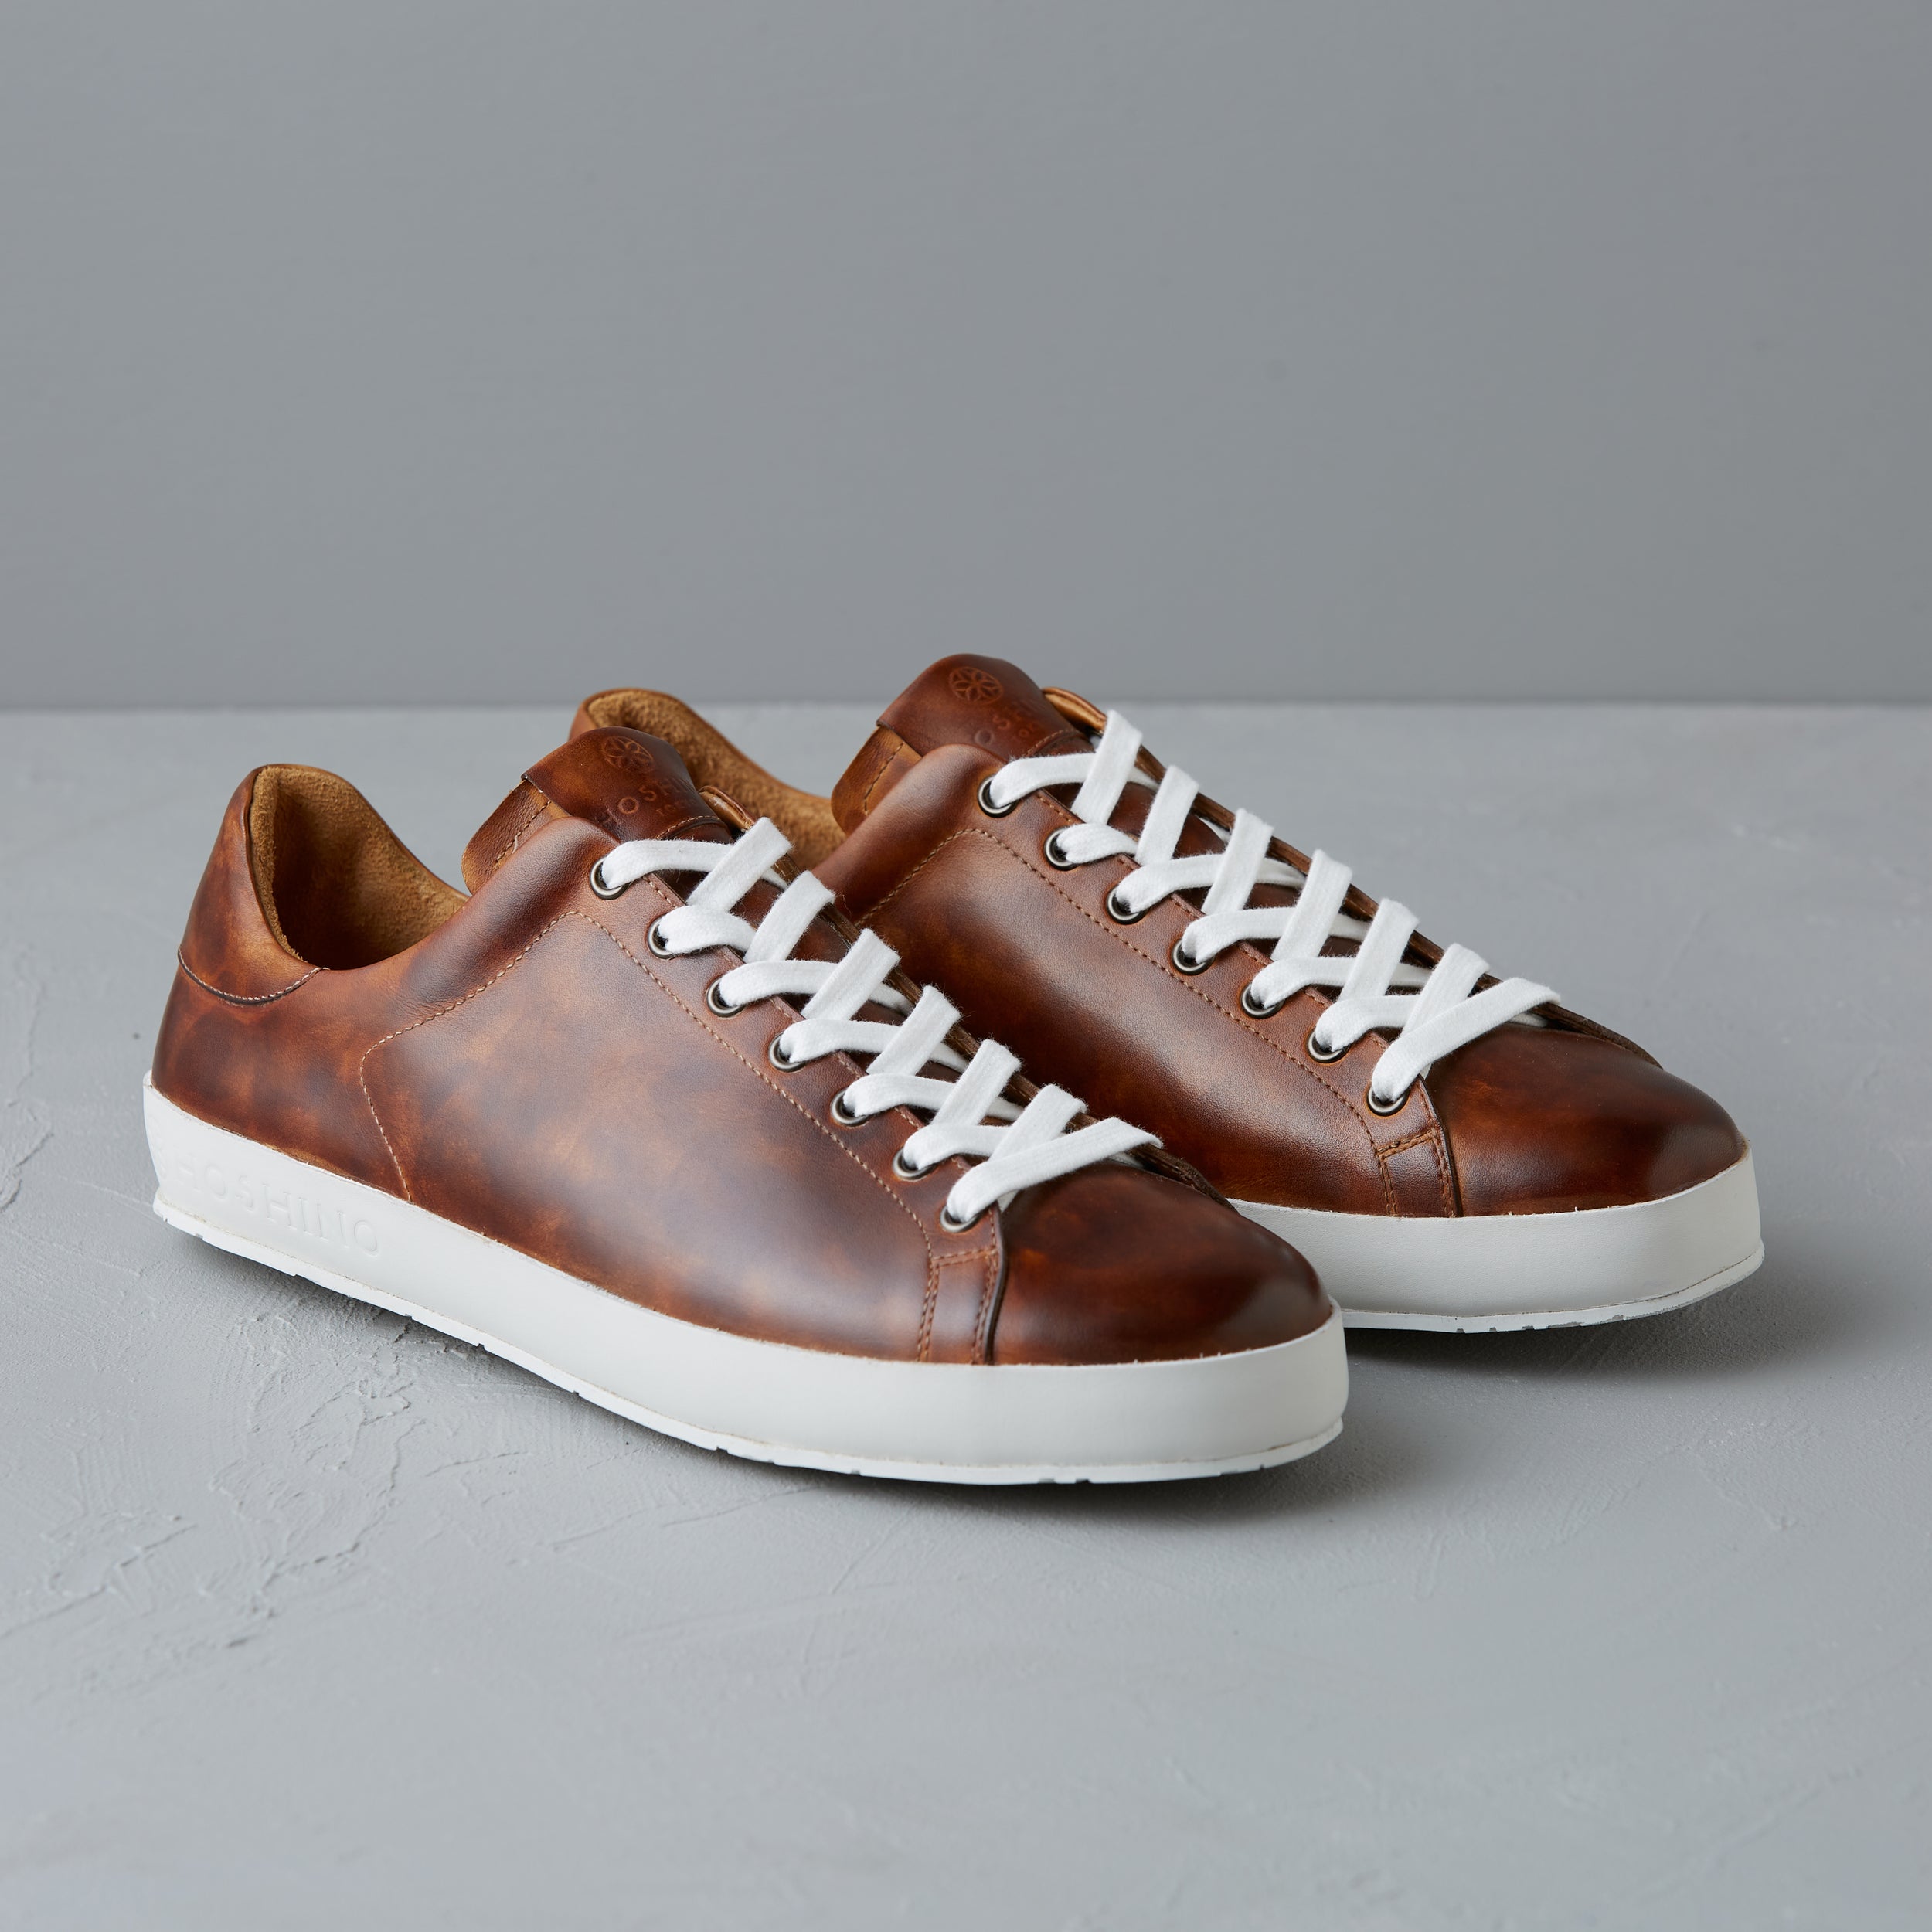 [men's] Liberte - low-top sneakers - brown on brown patina calfskin